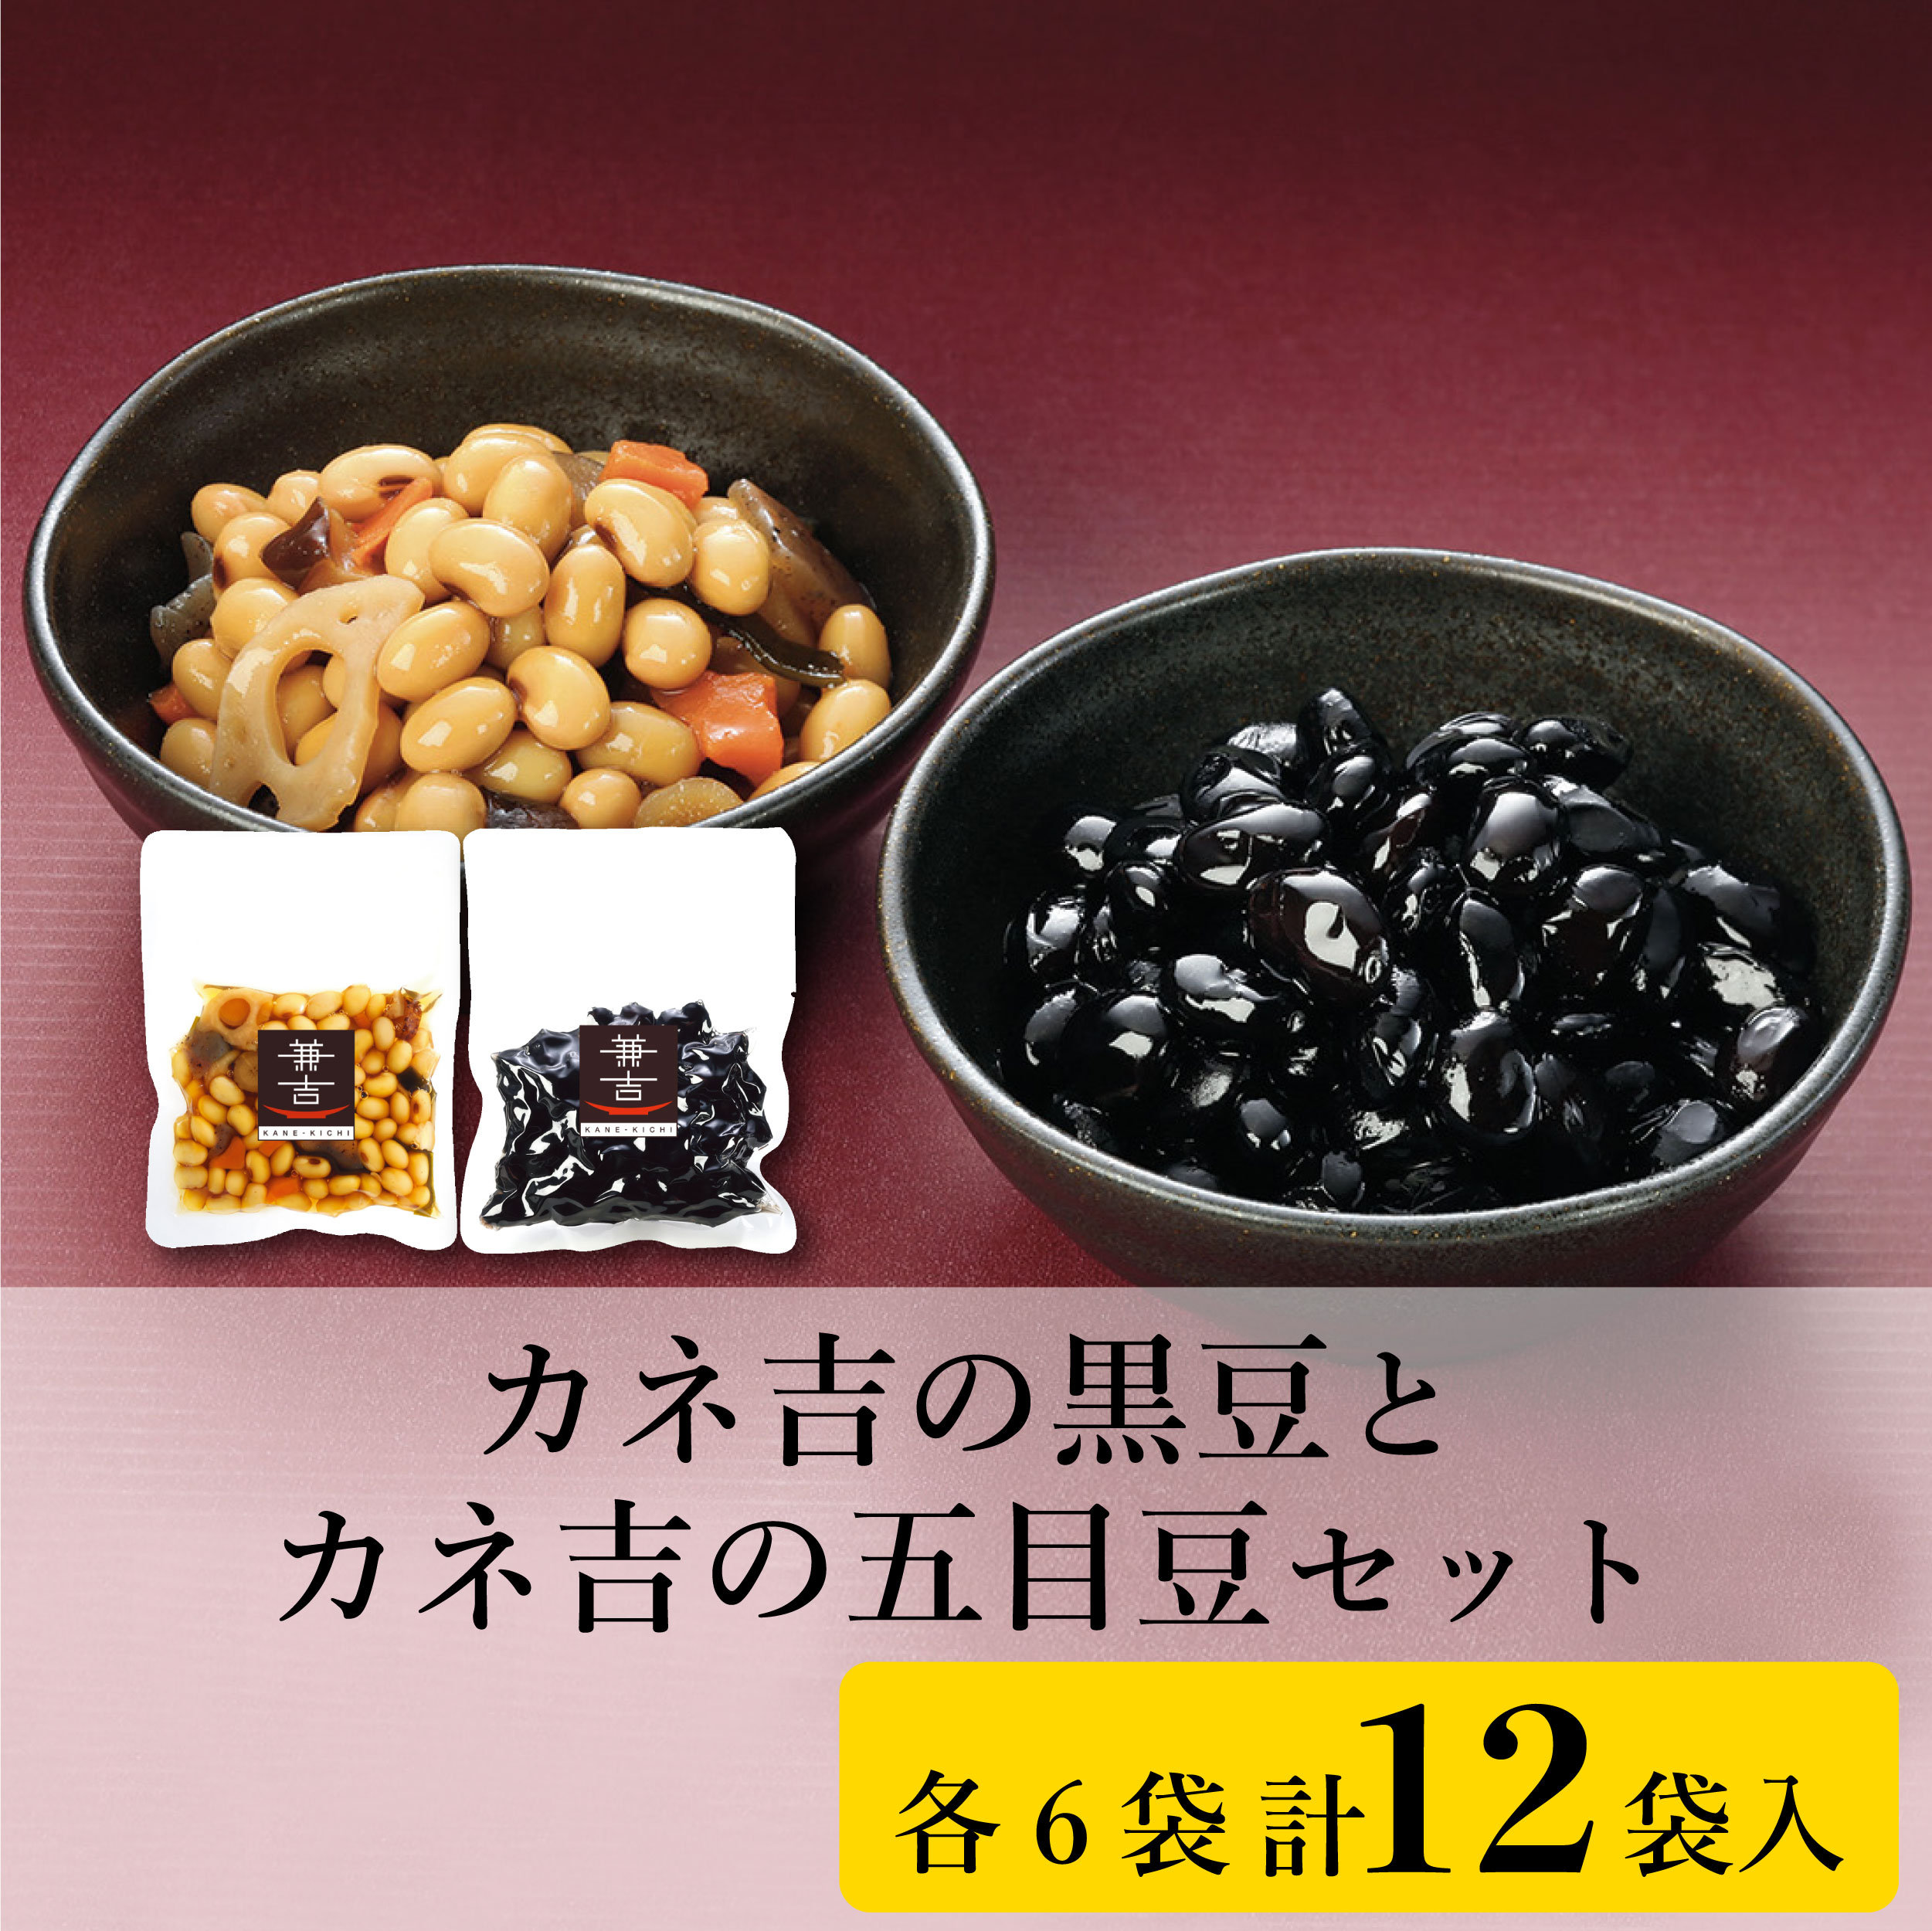 カネ吉の黒豆とカネ吉の五目豆セット